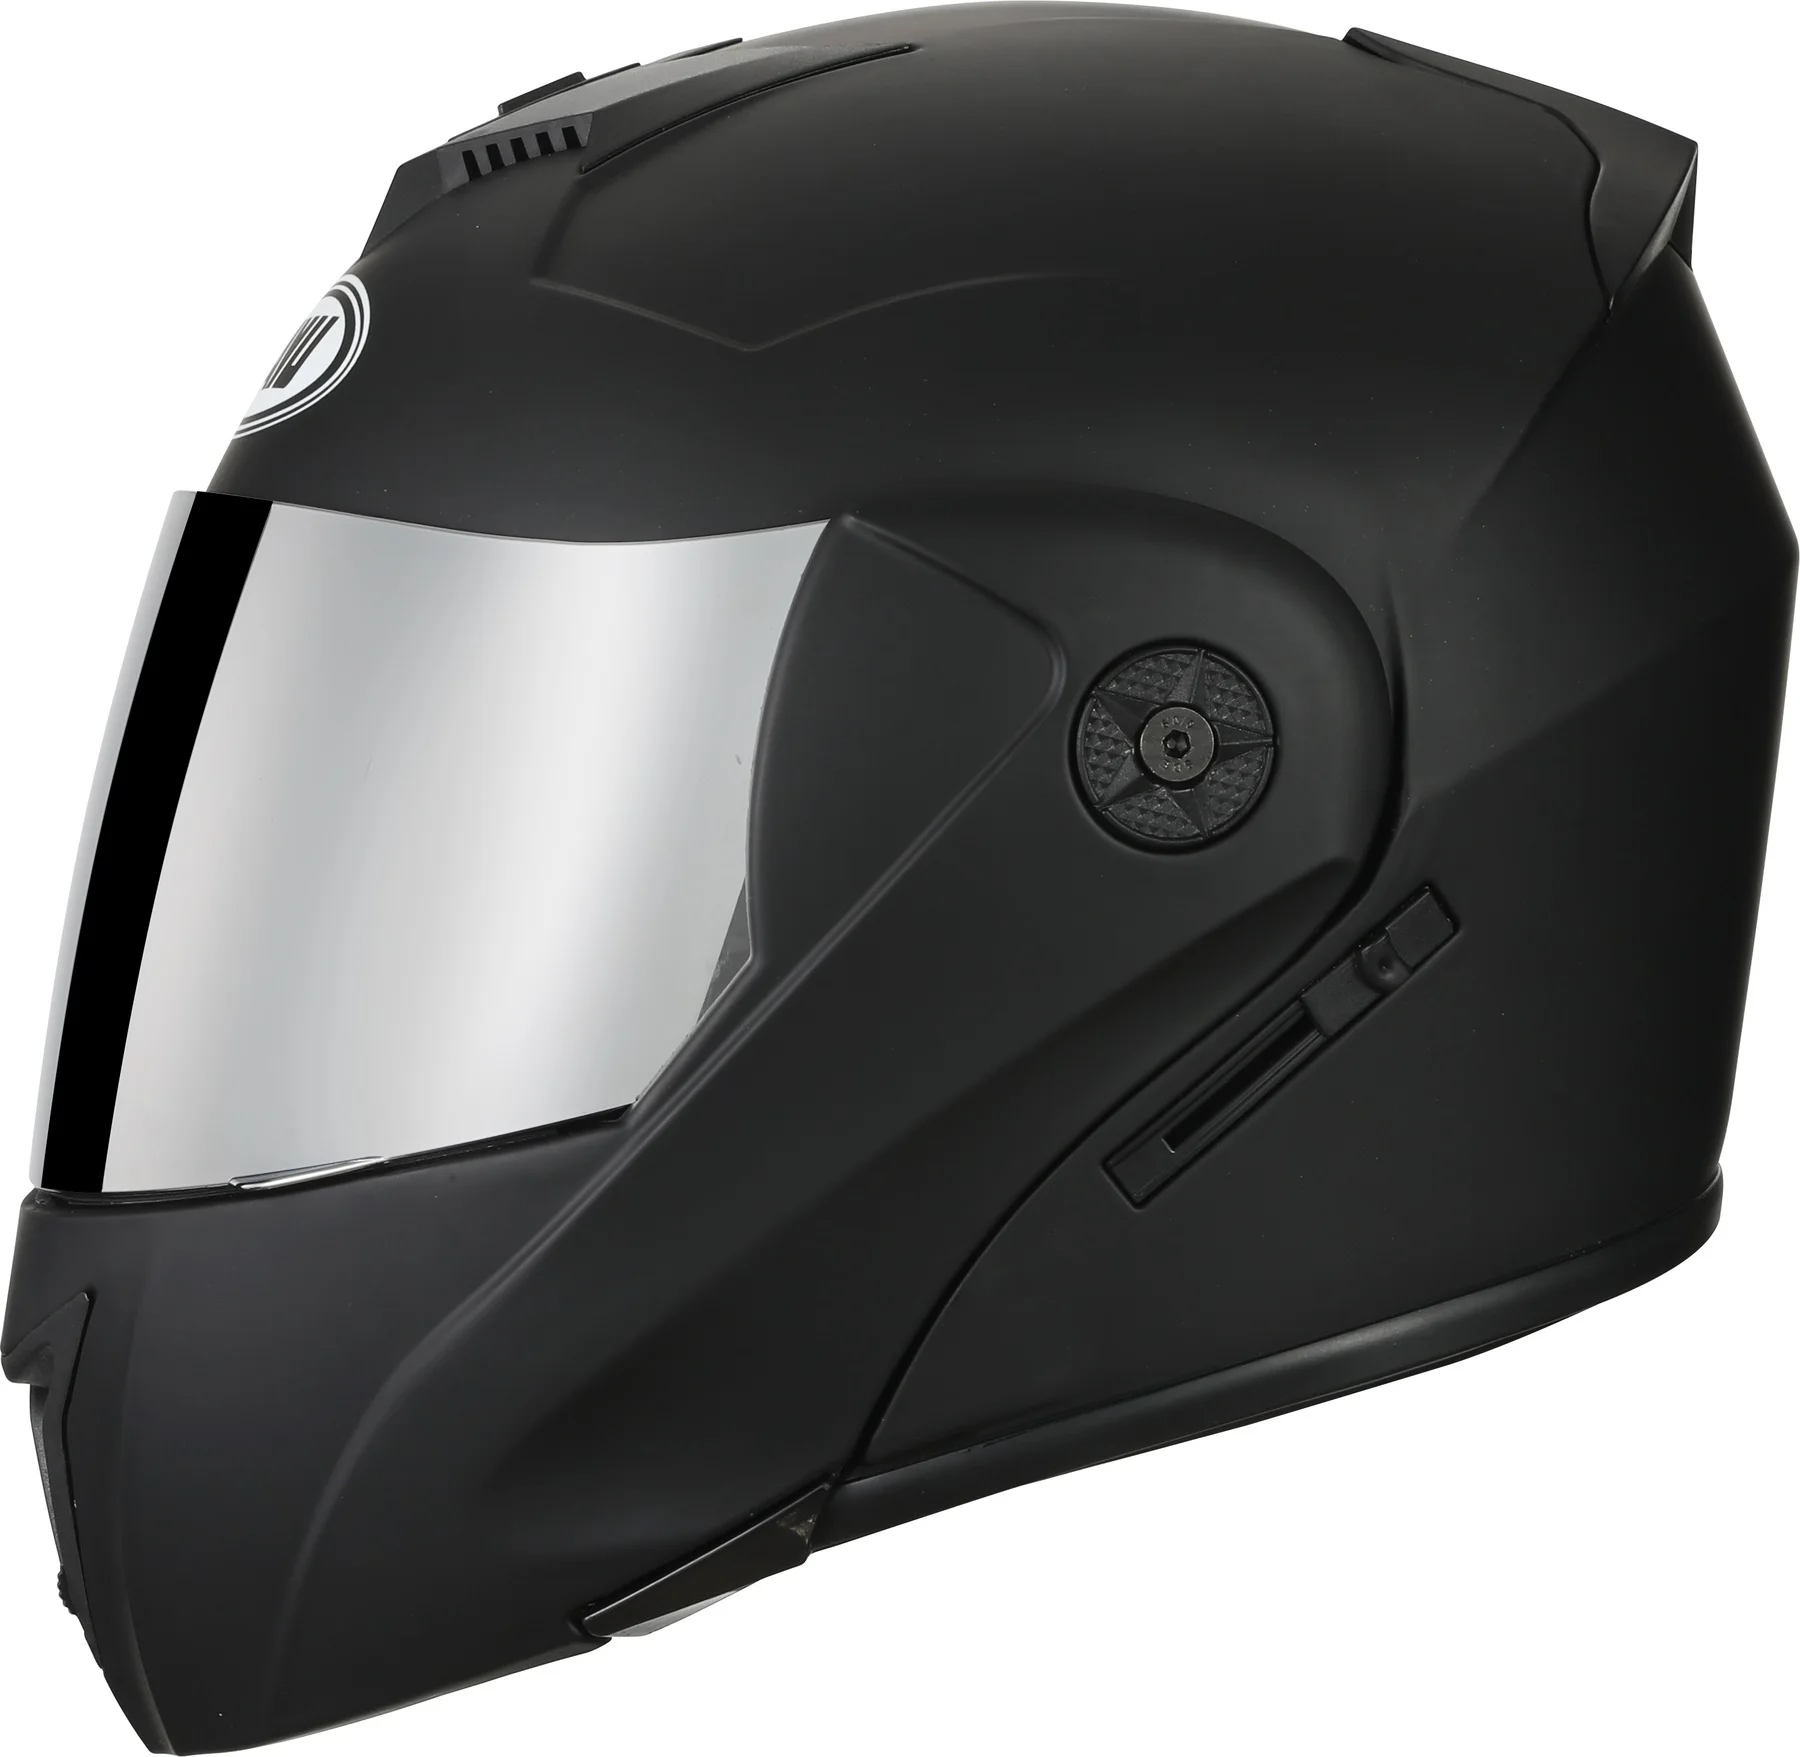 

Мотоциклетный шлем с откидной крышкой, профессиональный гоночный модульный шлем с двойными линзами, безопасный на все лицо для мотокросса, ...